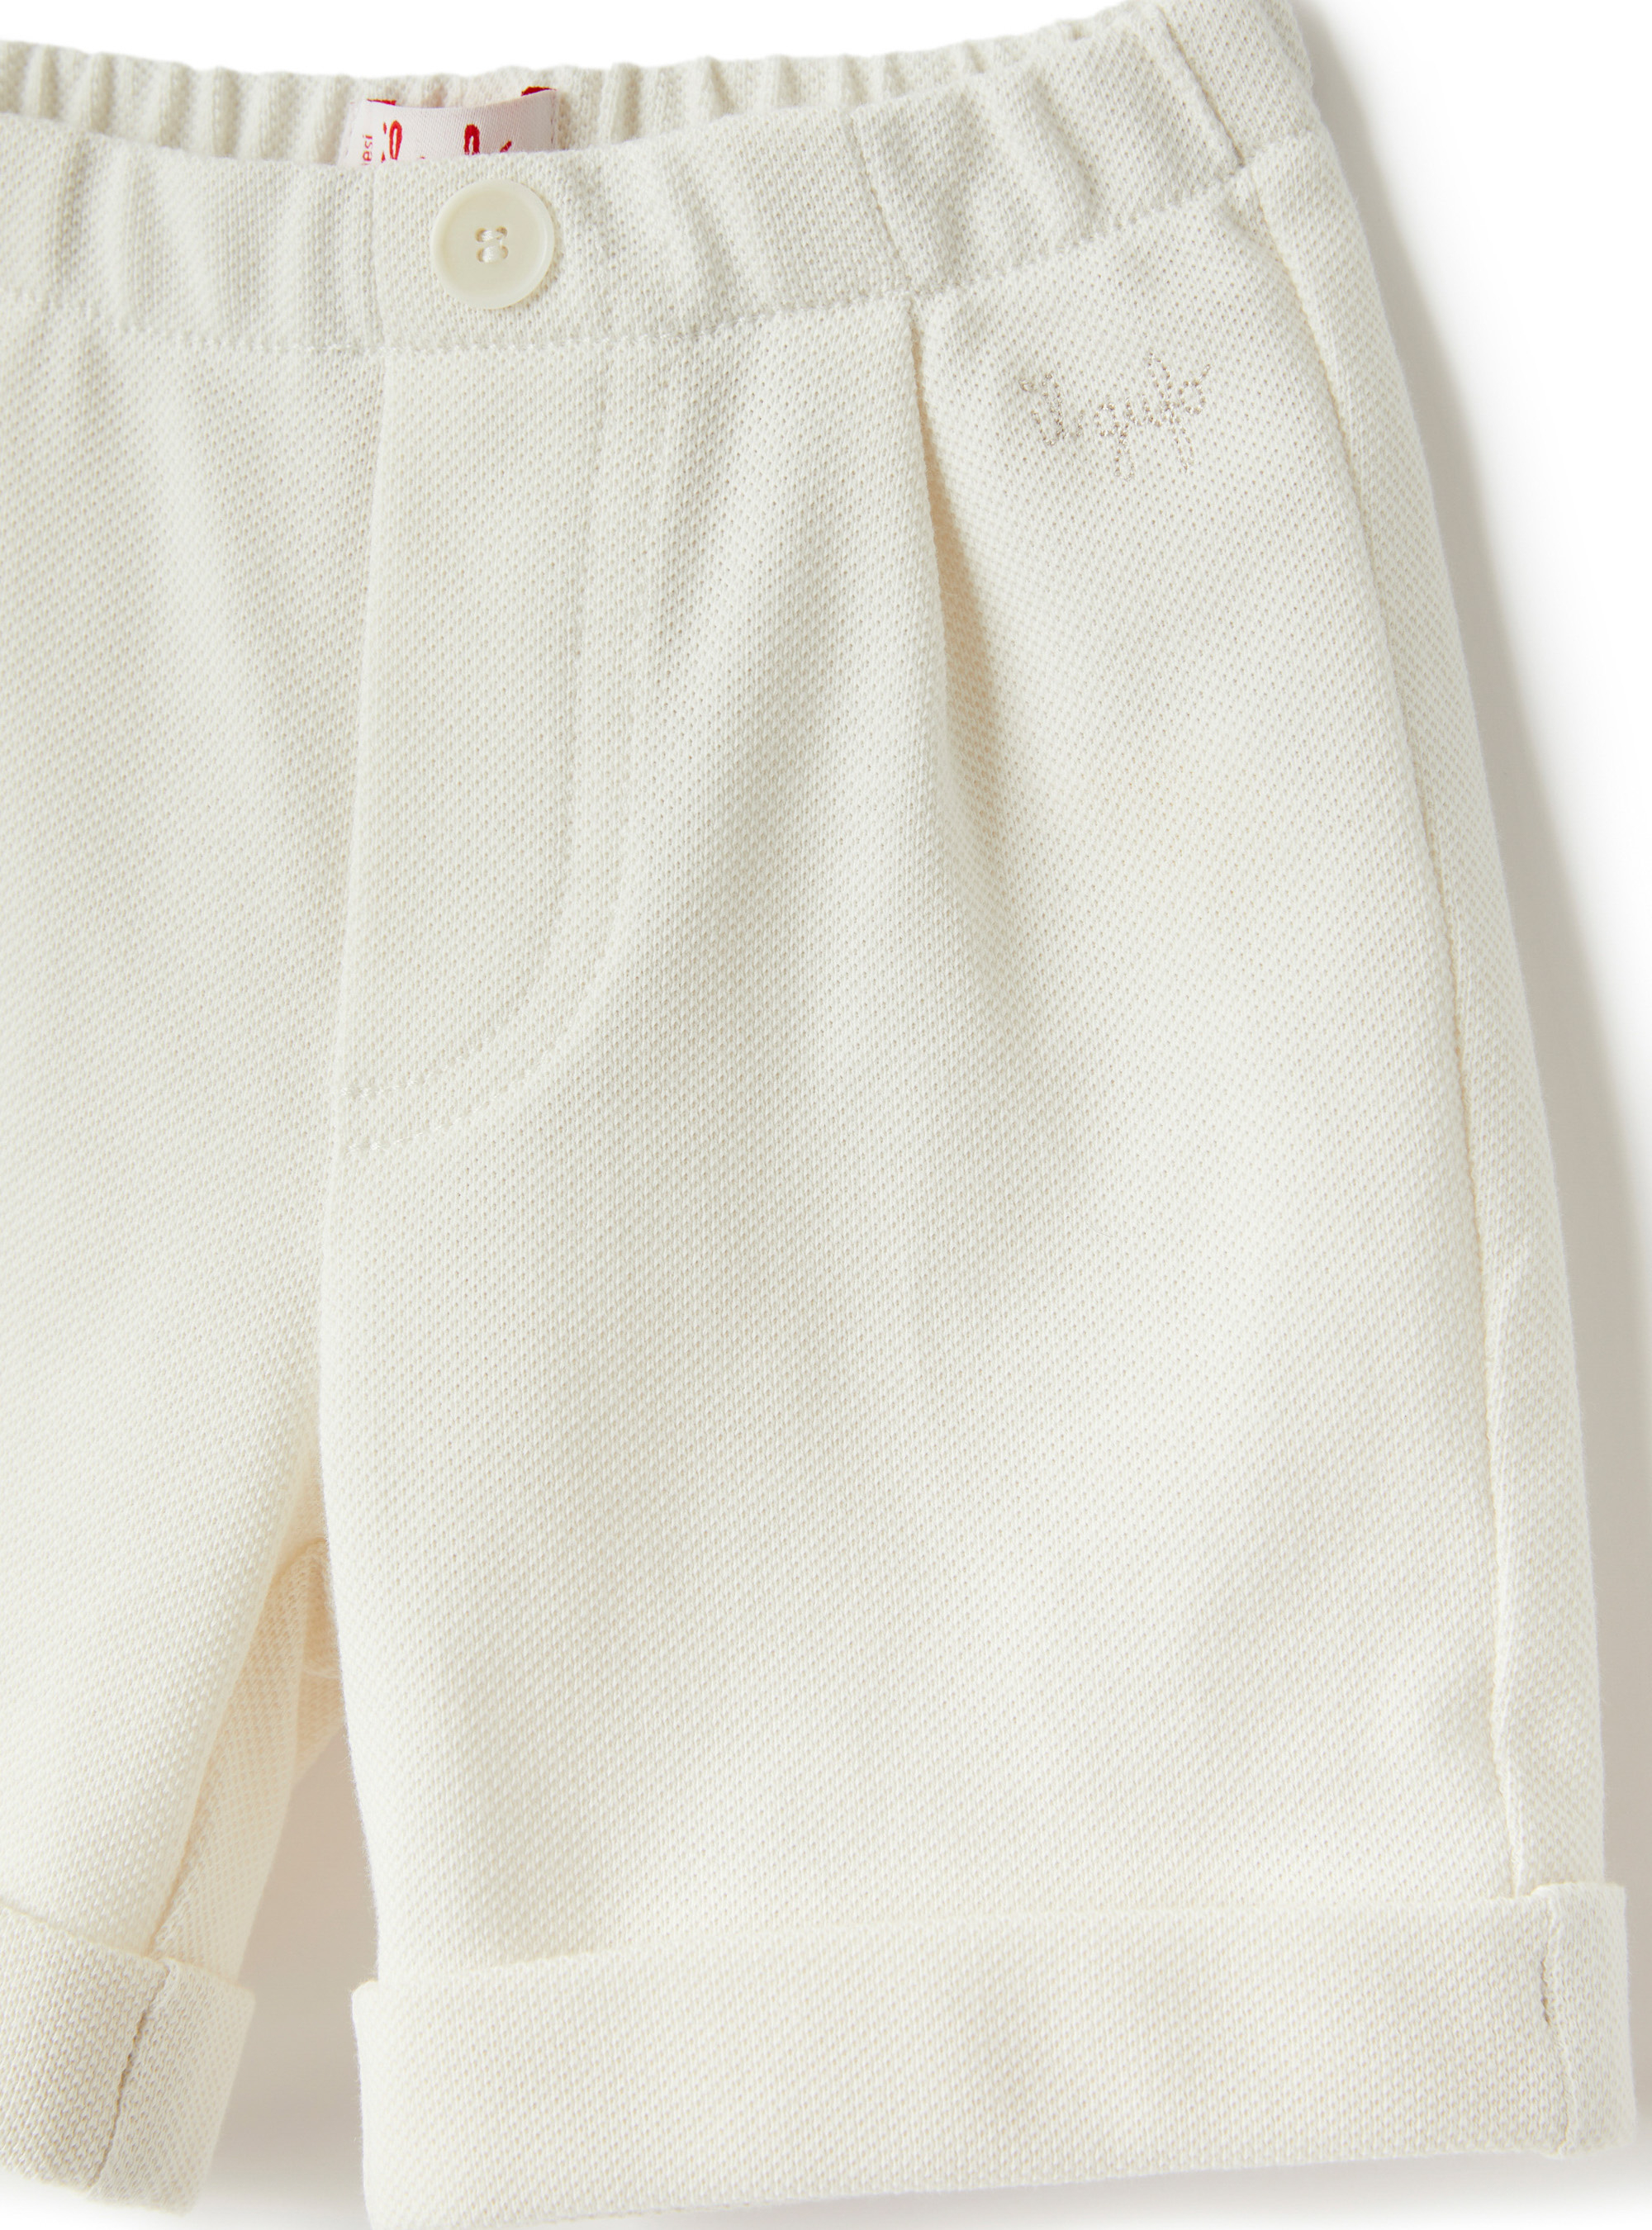 Pantaloncino in cotone piquet bianco - Beige | Il Gufo